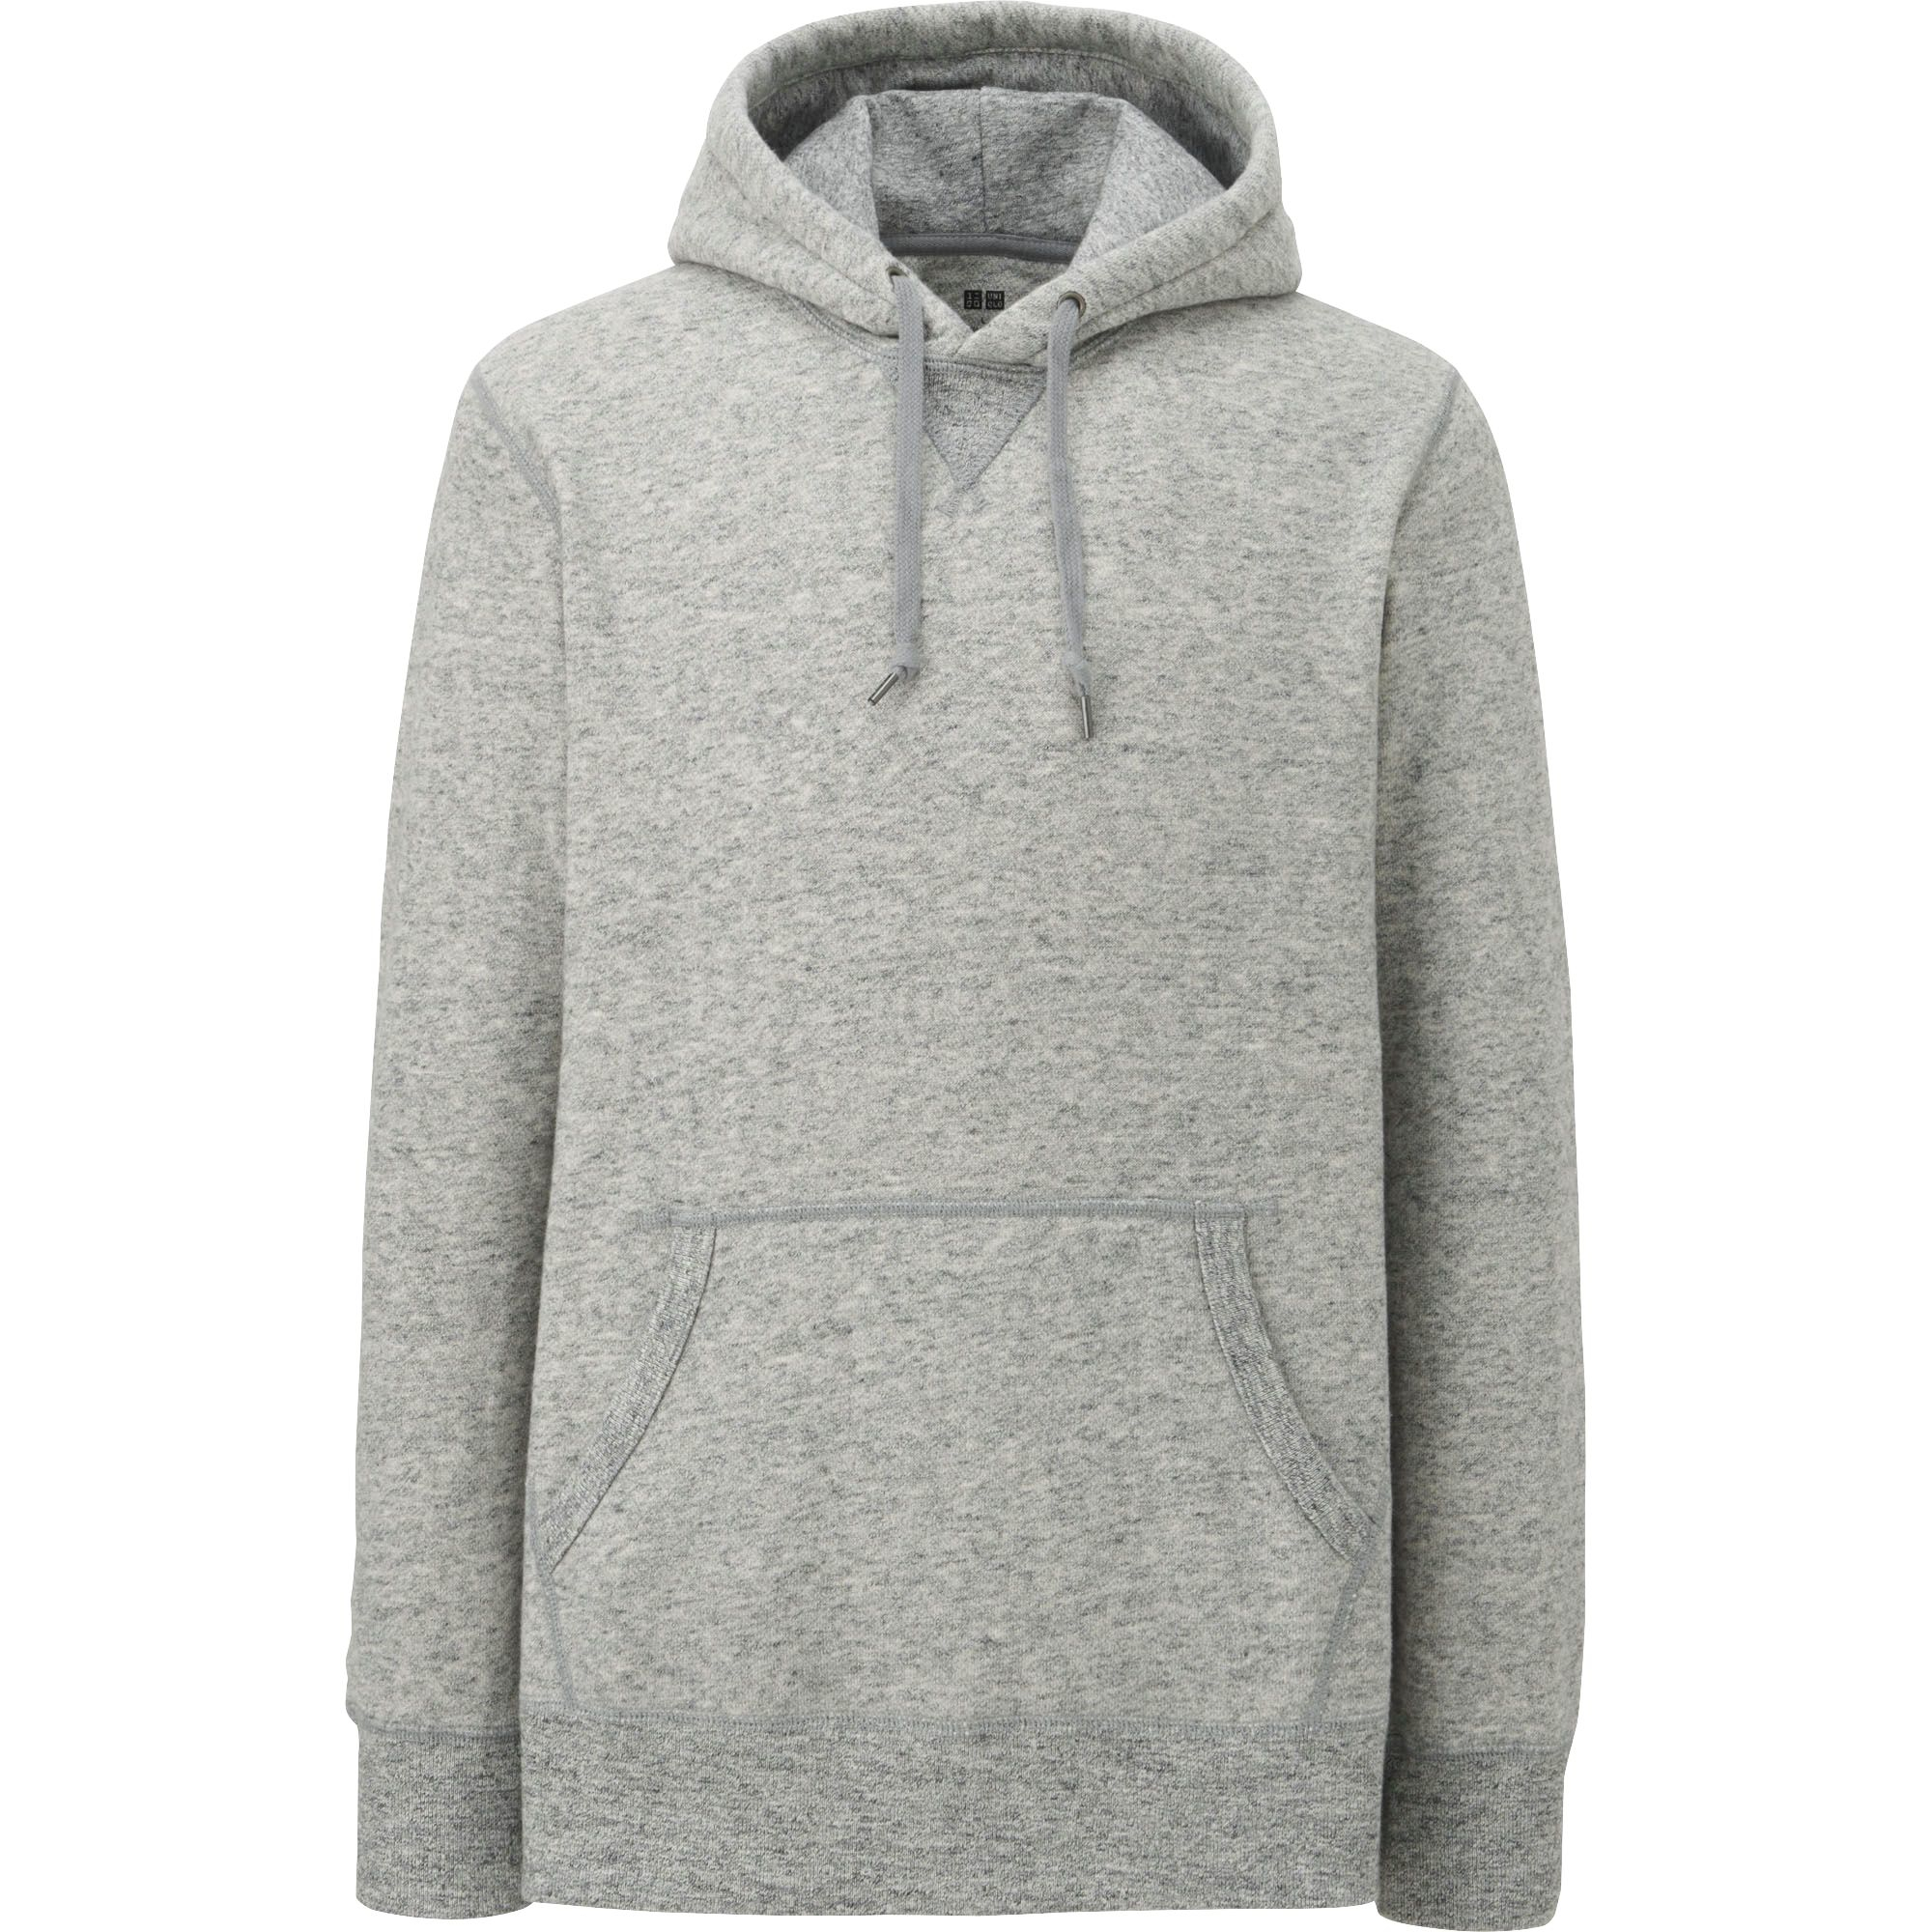 grey pullover hoodie men